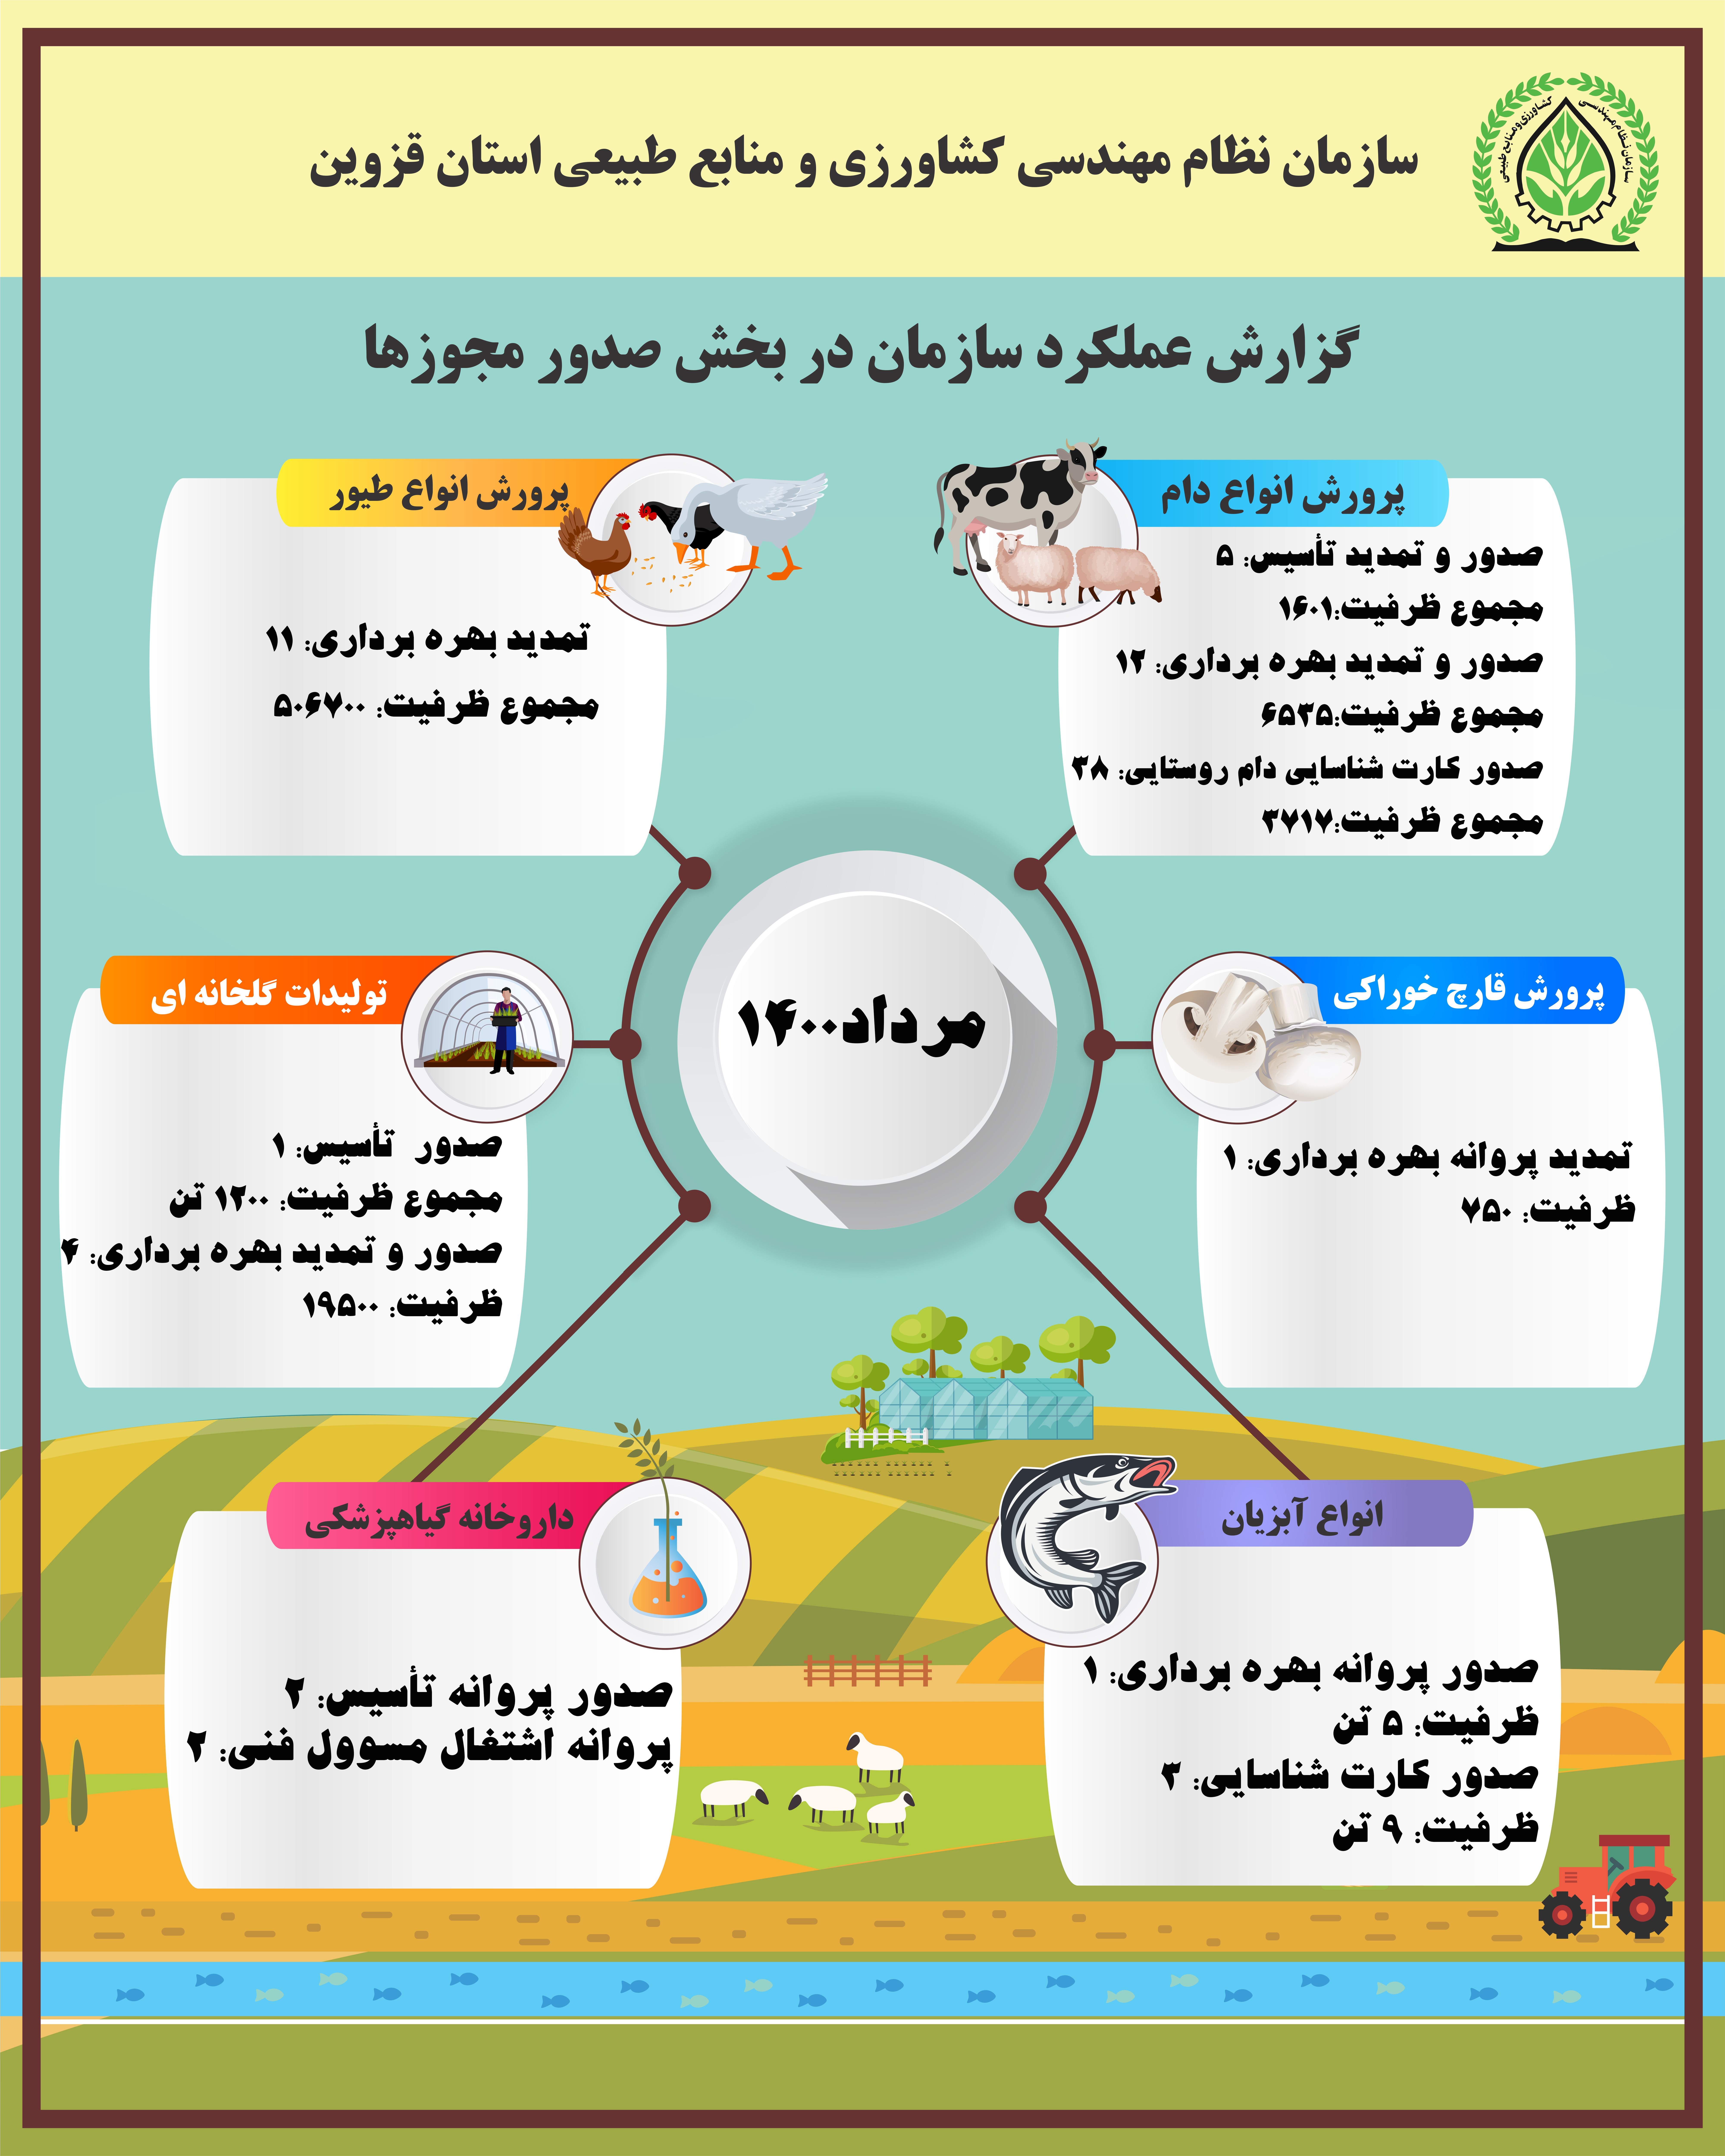 عملکرد سنم استان قزوین در بخش صدور مجوز واحدهای تولیدی